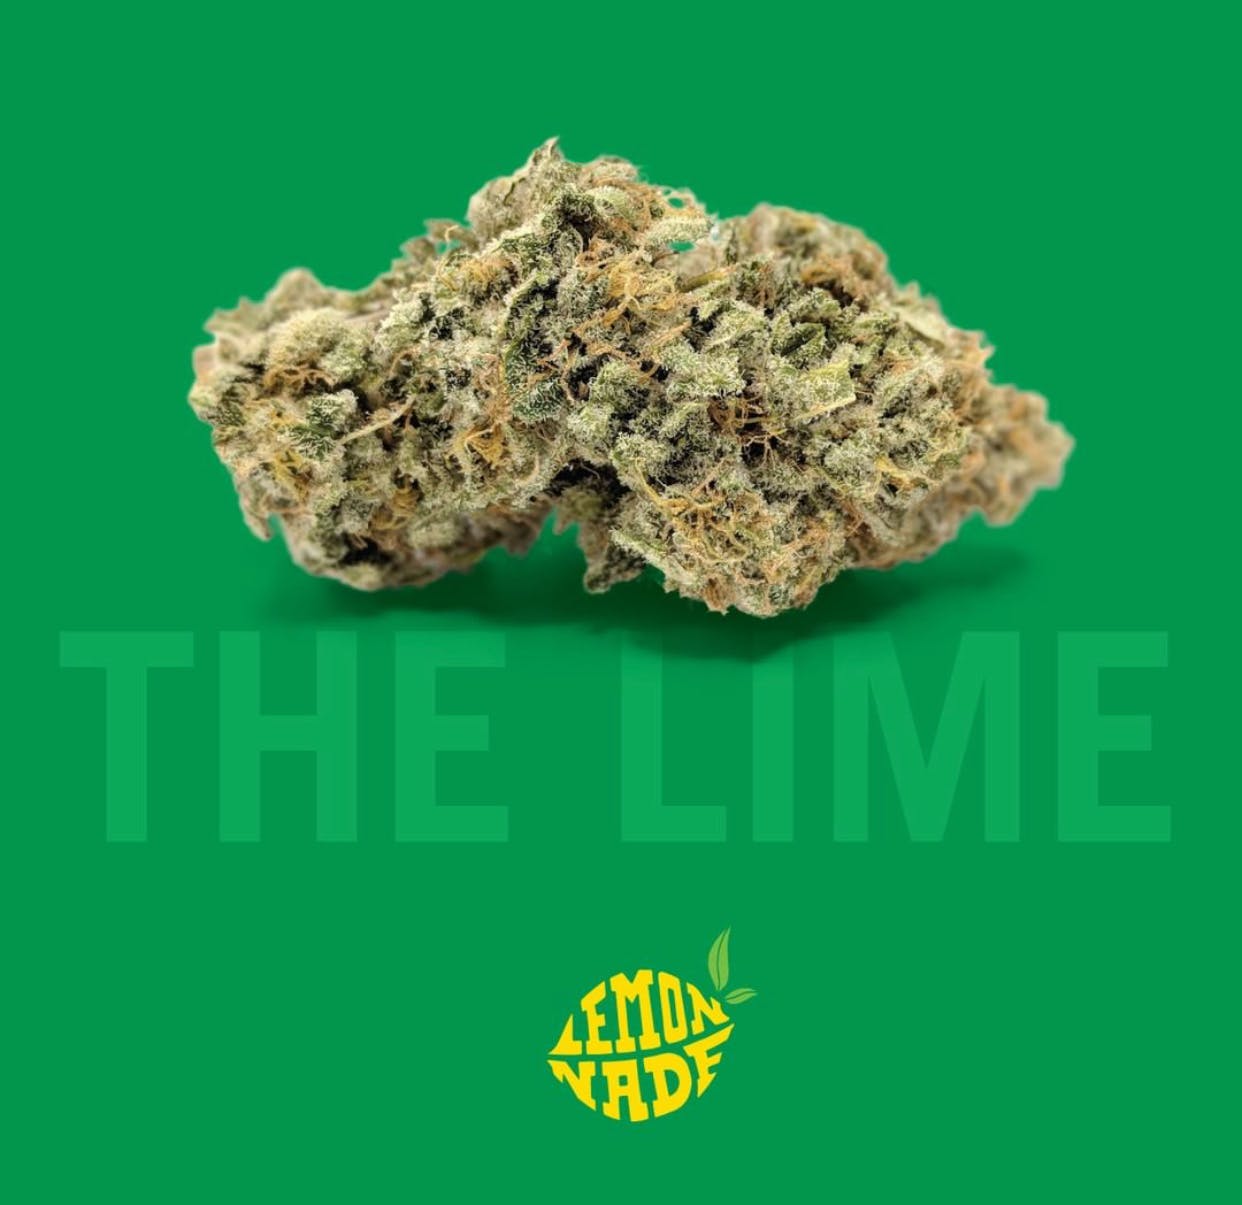 LEMONADE - The Lime